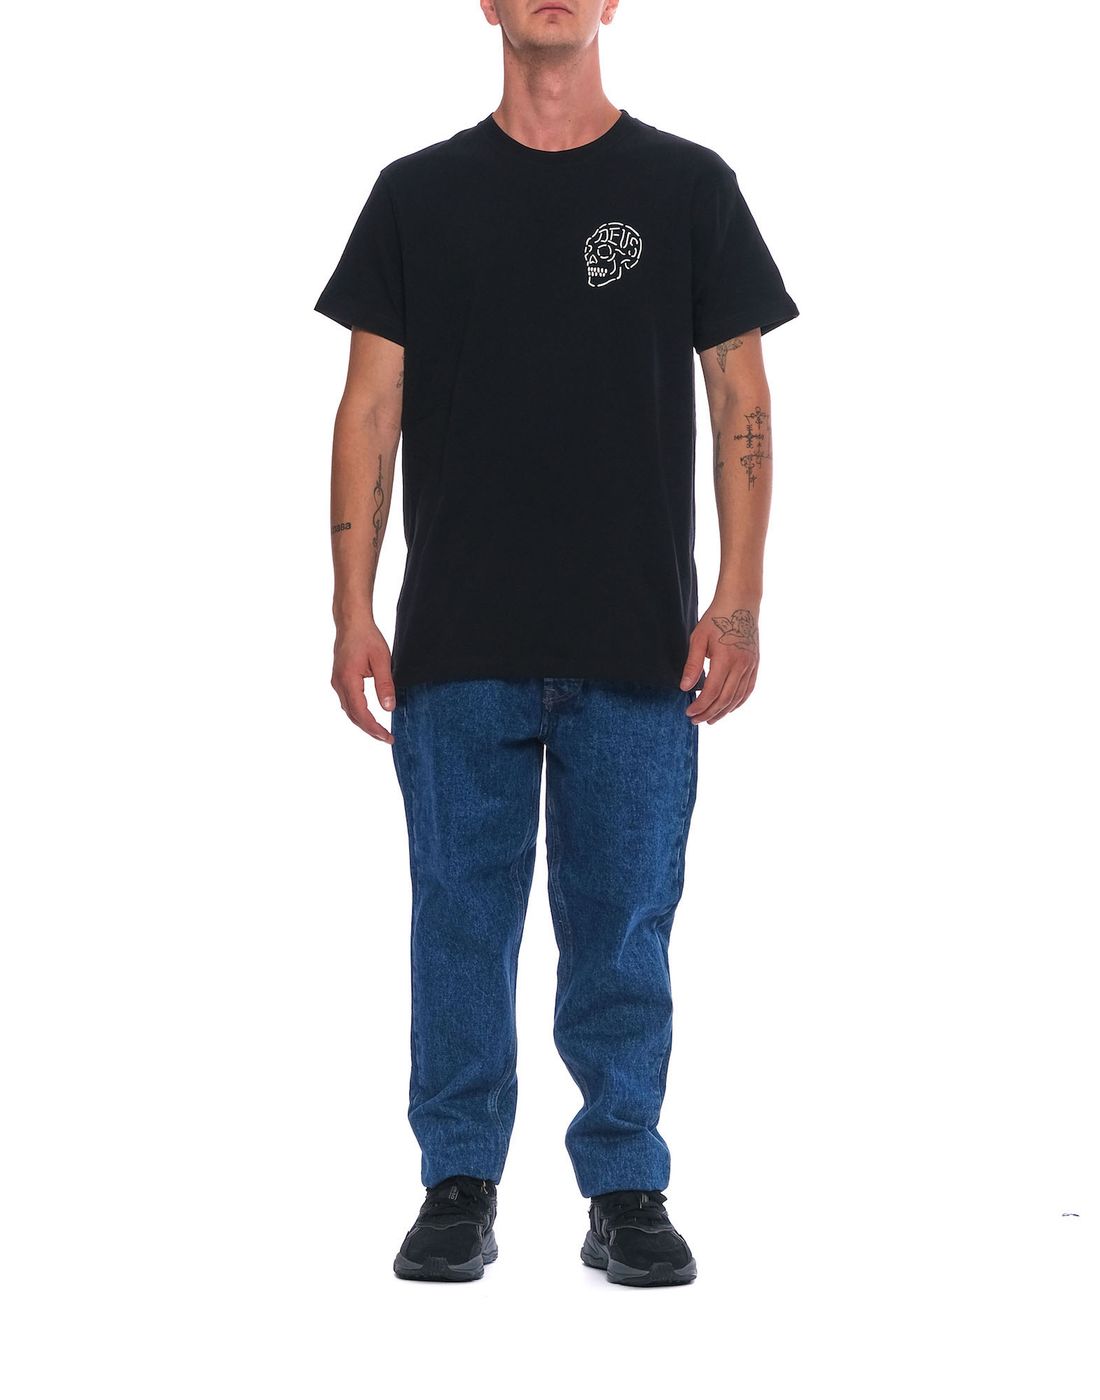 T-shirt pour l'homme dmh31645c blk Deus Ex Machina